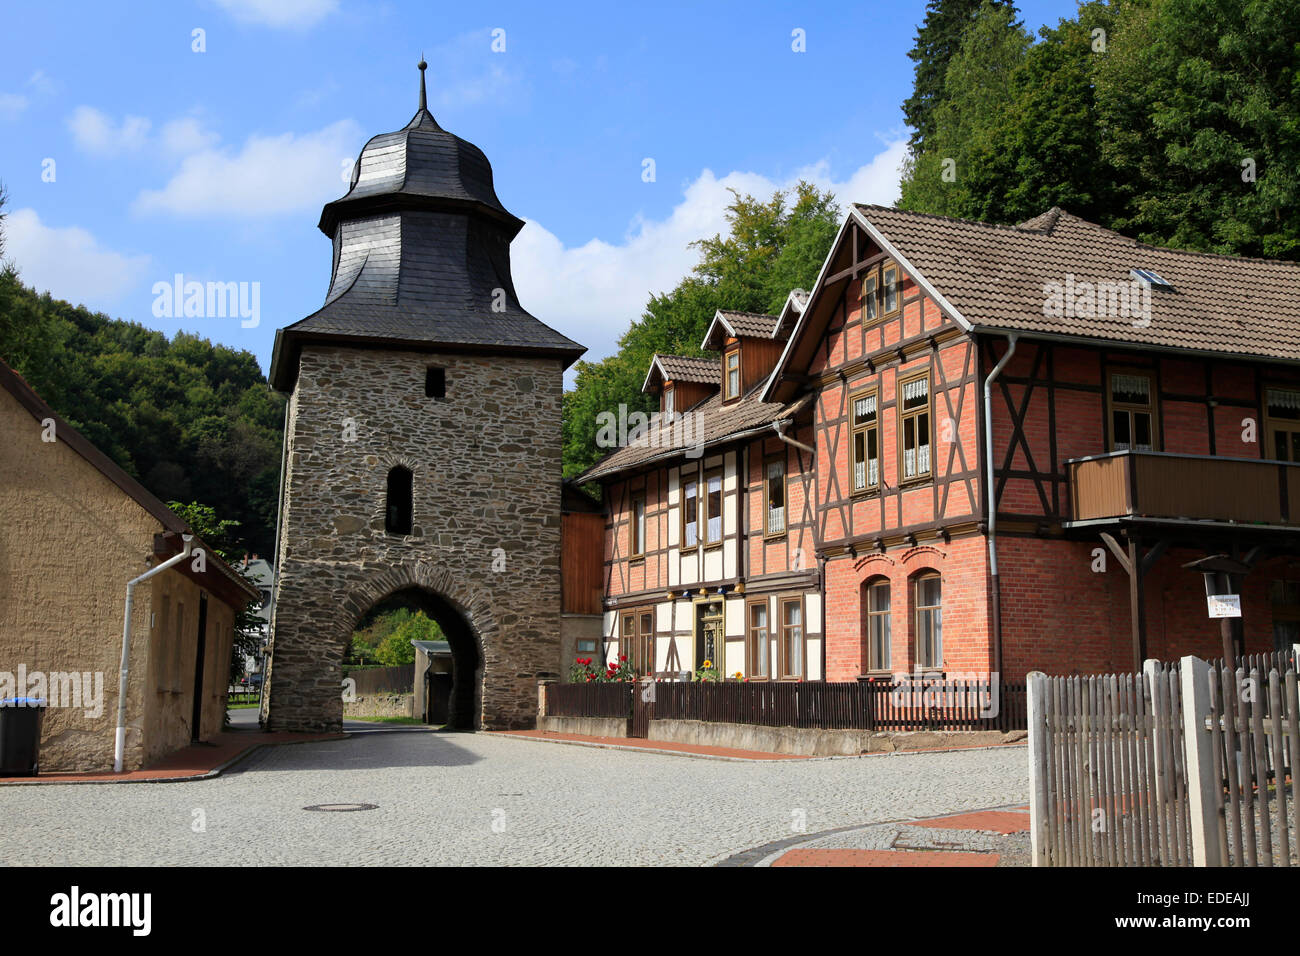 Les chevaliers porte est une ancienne porte de la ville de Stolberg et a été construit au 14ème siècle dans le style gothique. Photo : Klaus Nowottnick Date : 17 Septembre, 2012 Banque D'Images